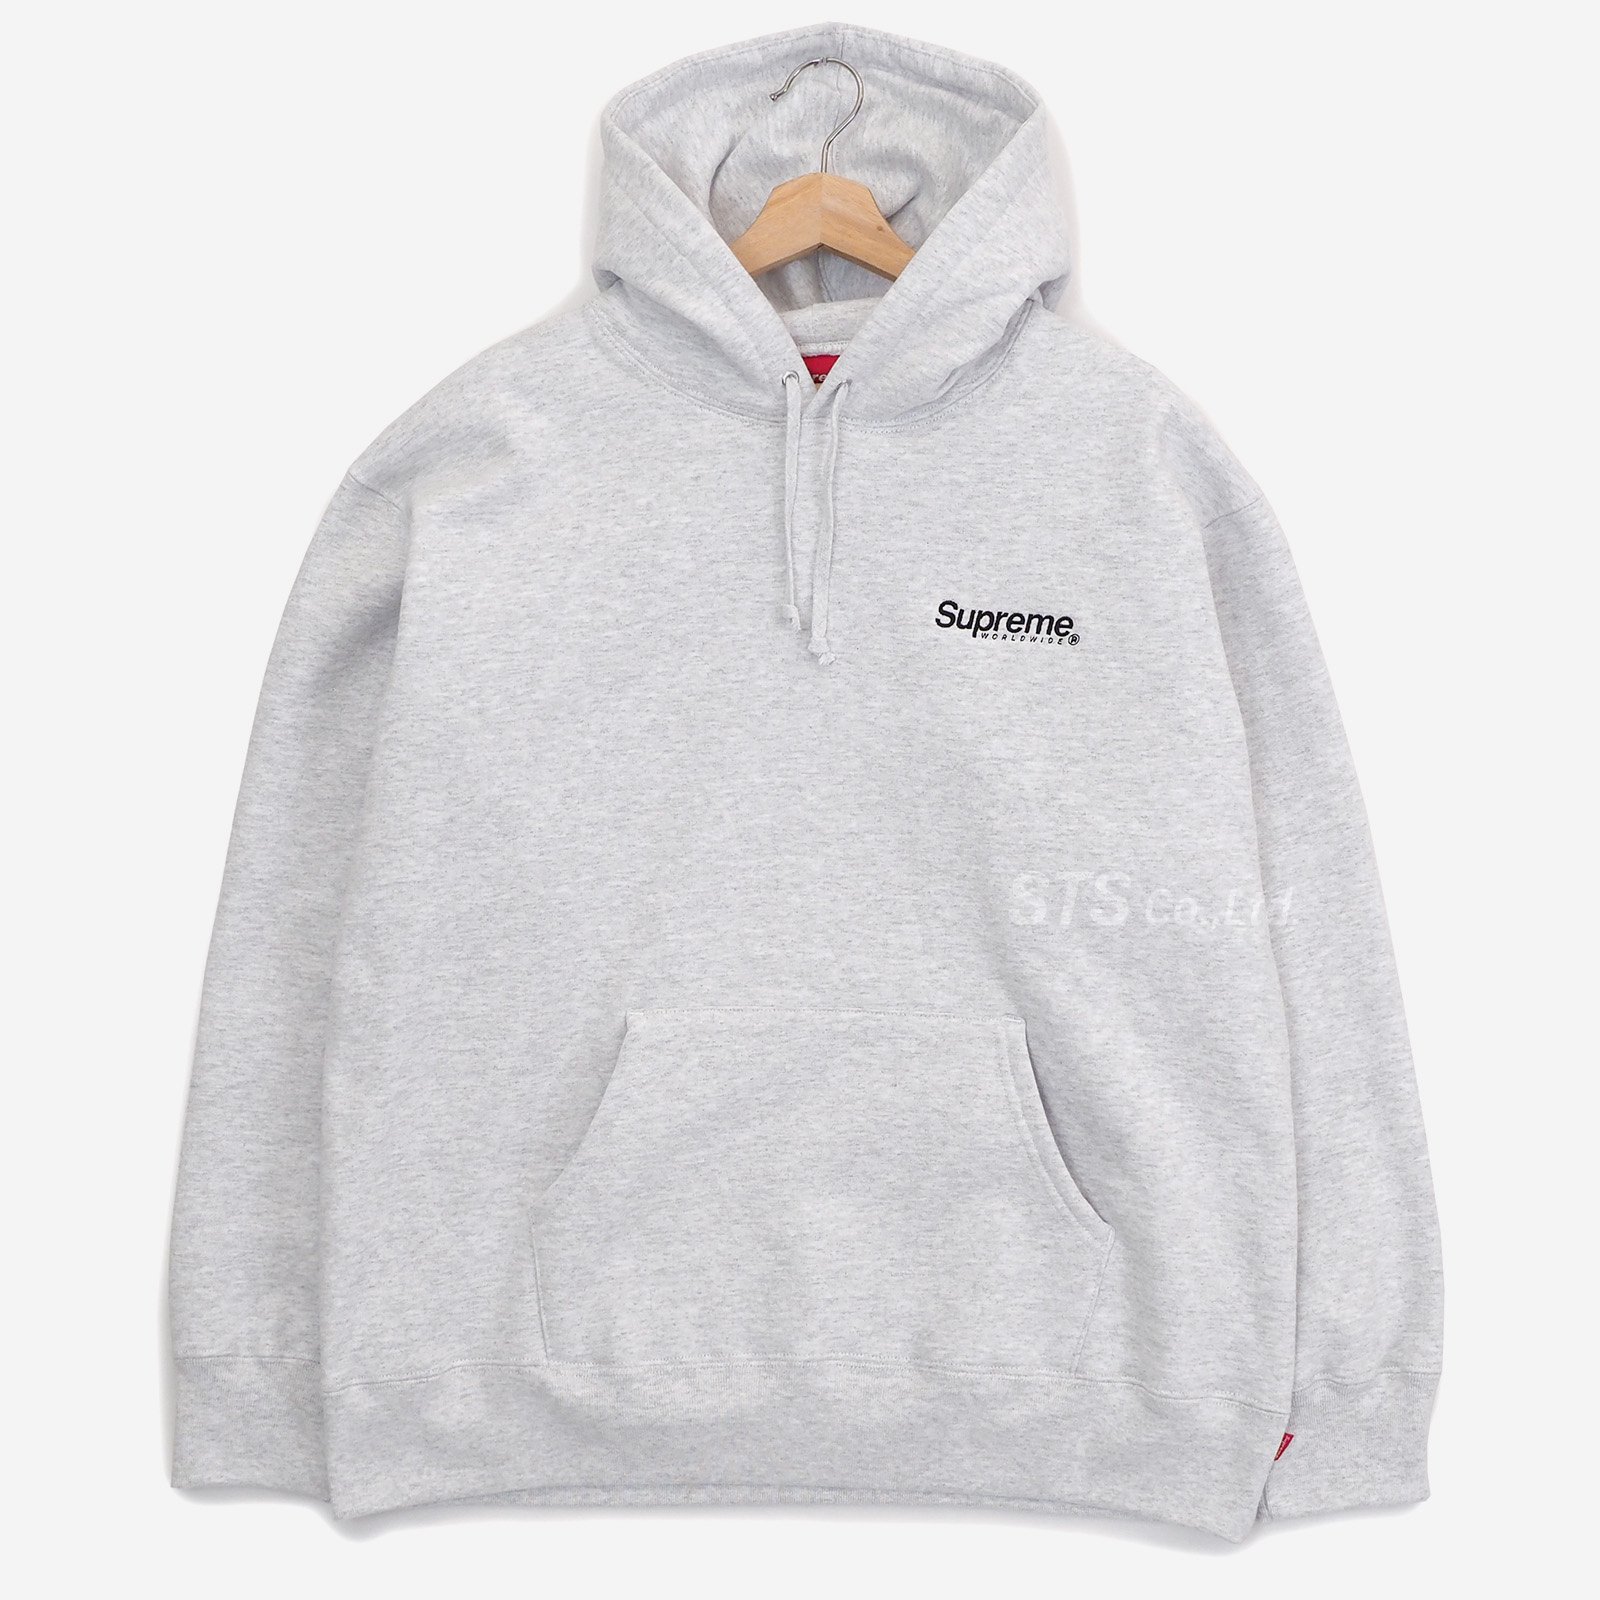 Supreme - Worldwide Hooded Sweatshirt - UG.SHAFT